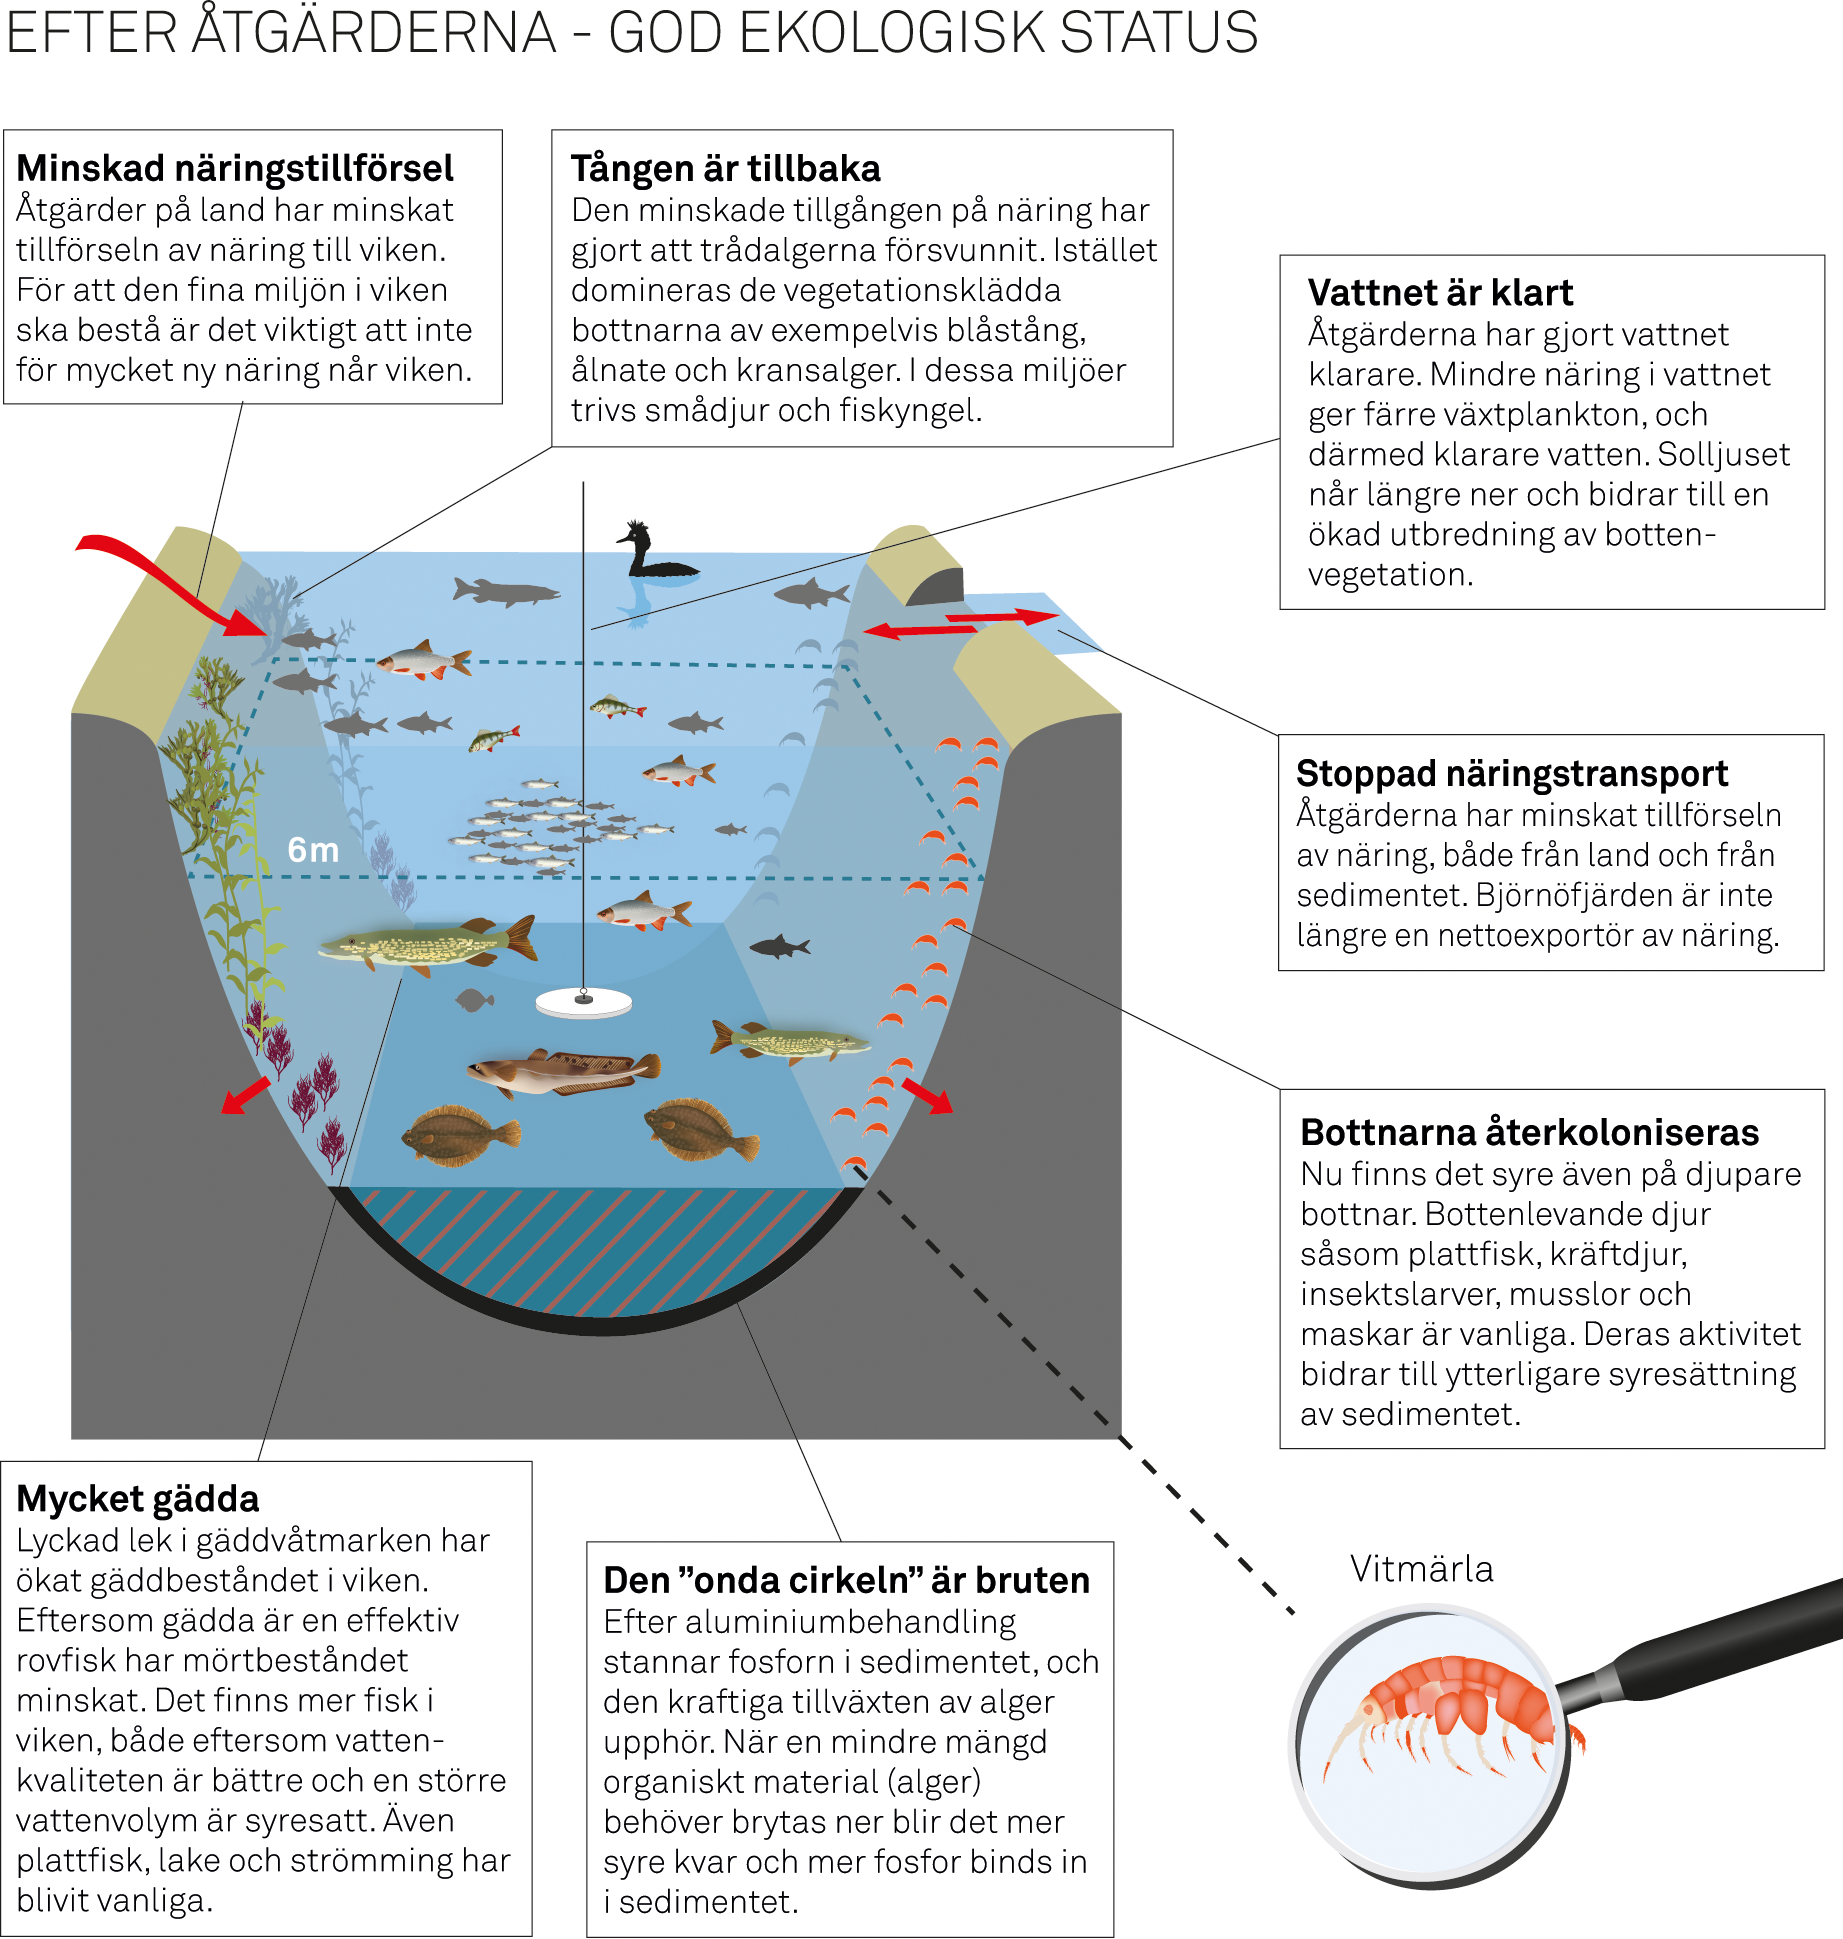 Illustrationen på sidan 16 och 17 beskriver Björnöfjärdens egenskaper innan projektet startade och miljön när ekosystemet återhämtat